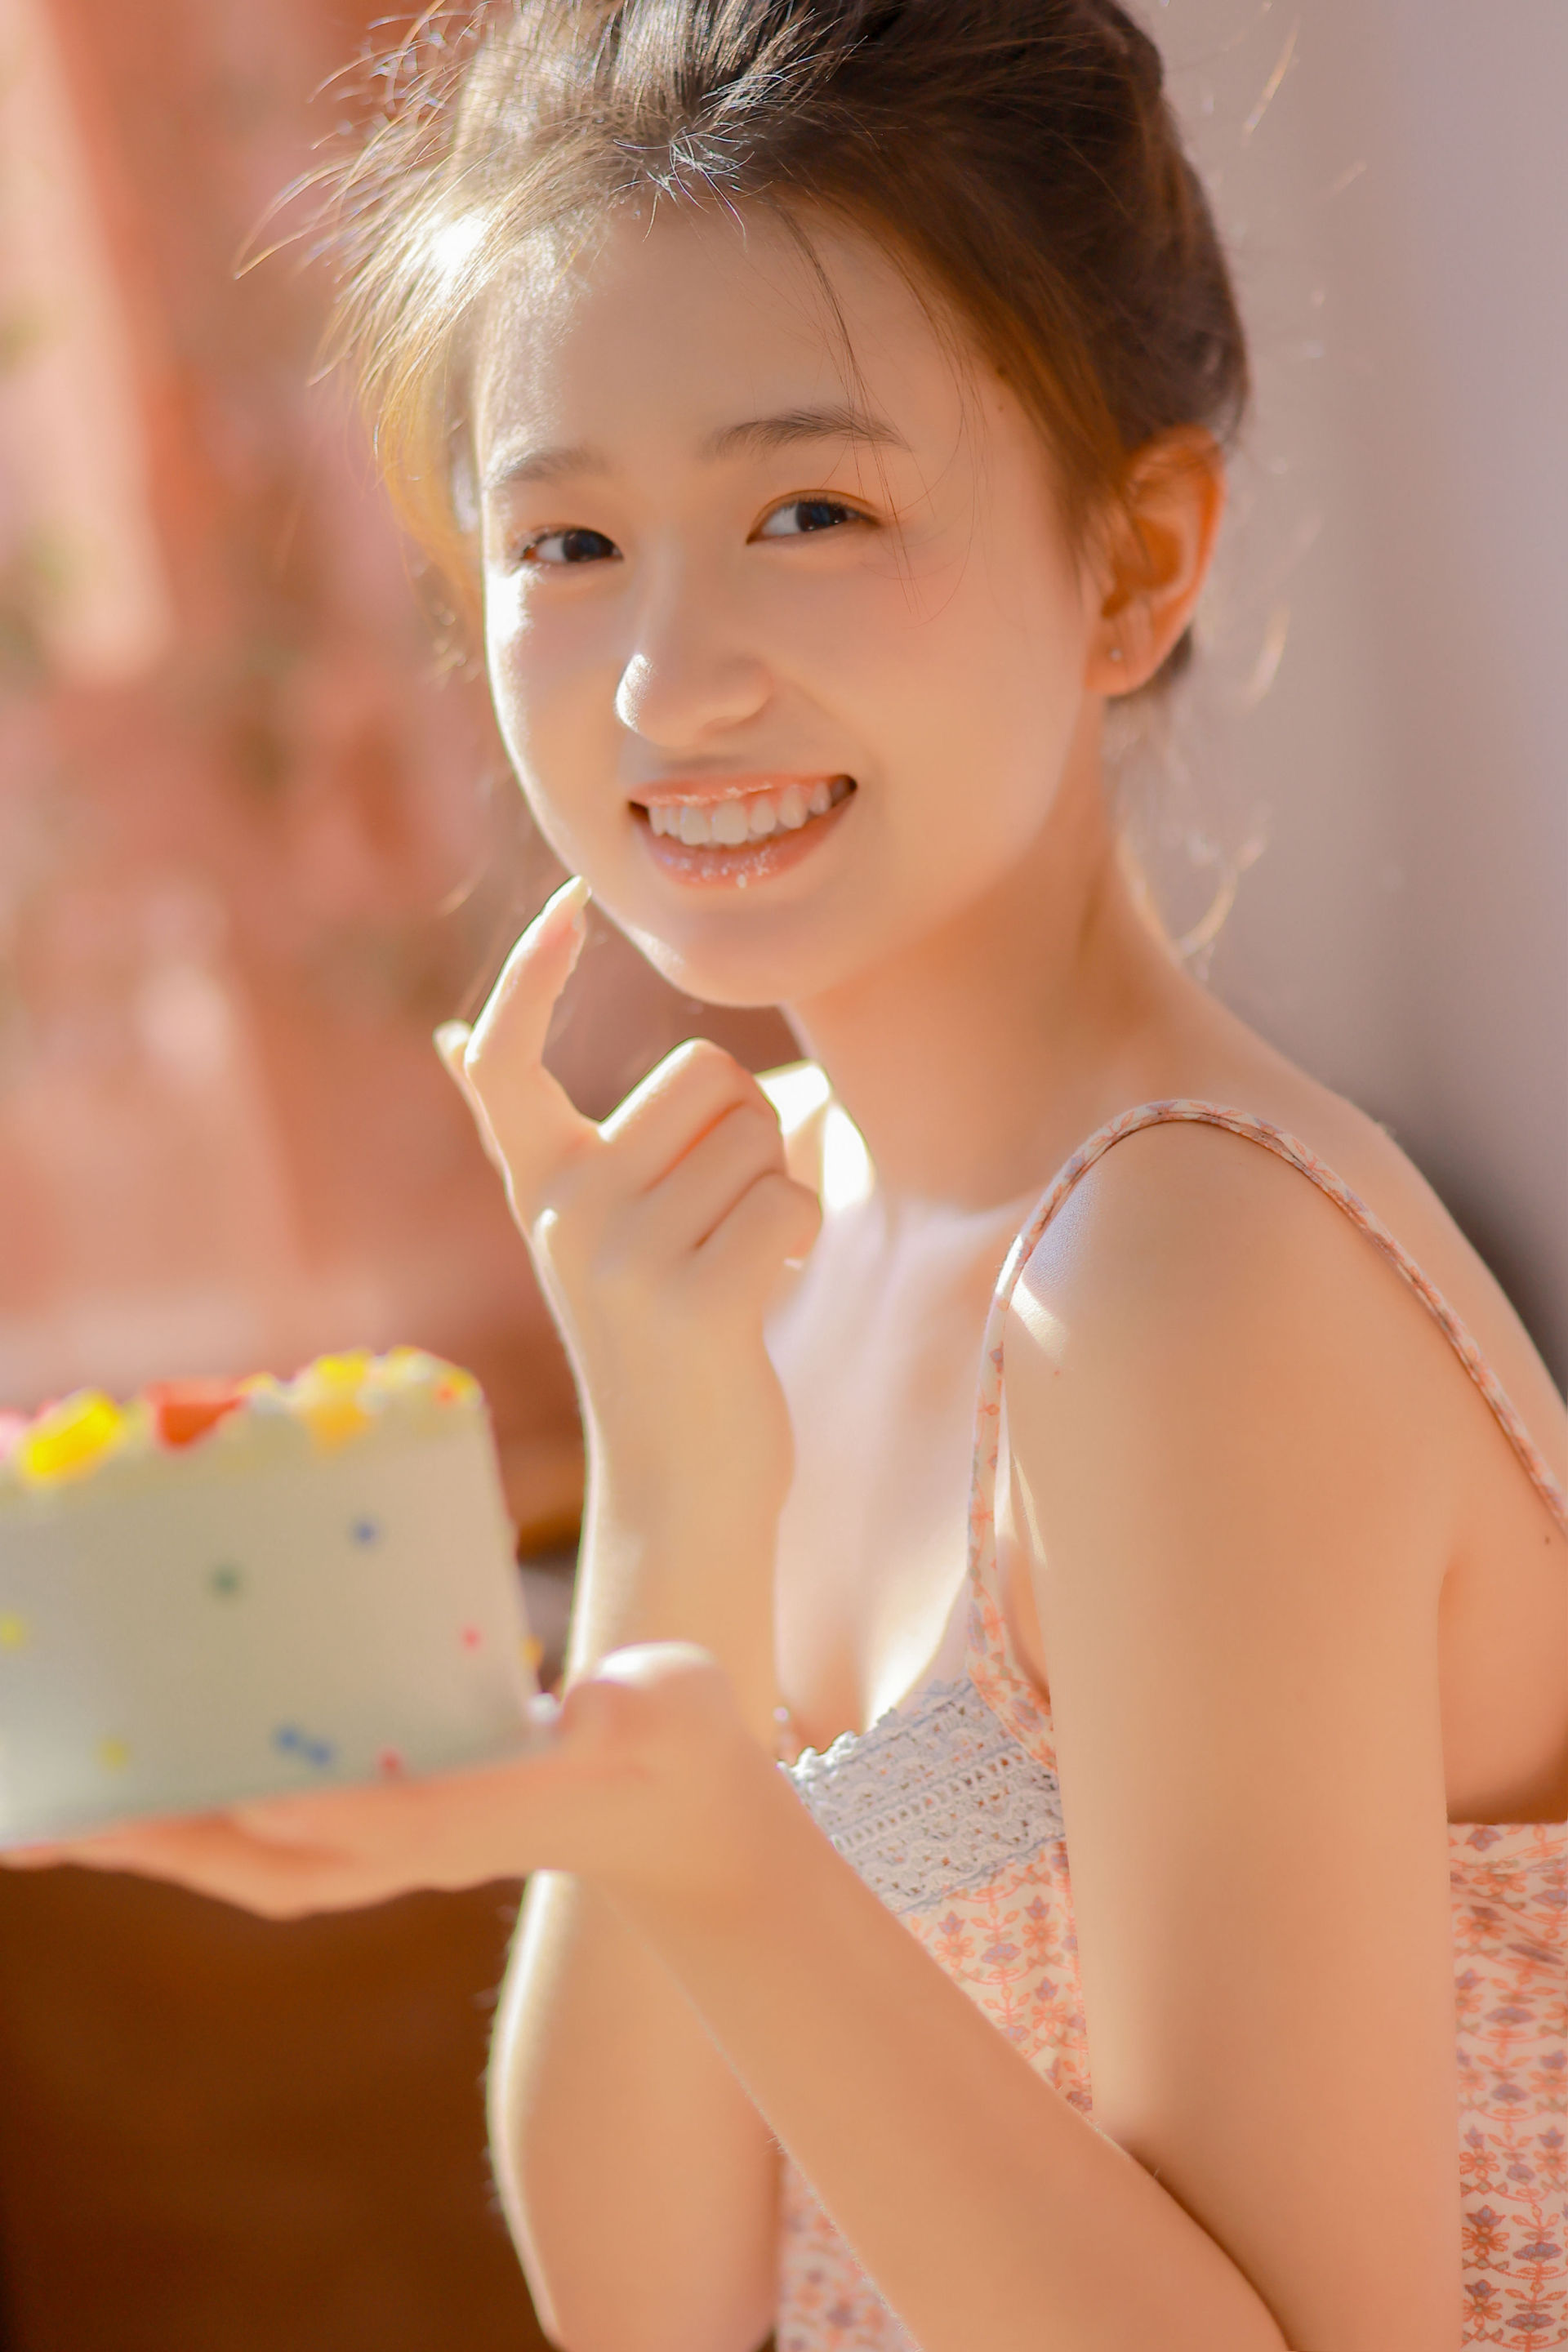 甜甜的蛋糕 日系 少女 写真集